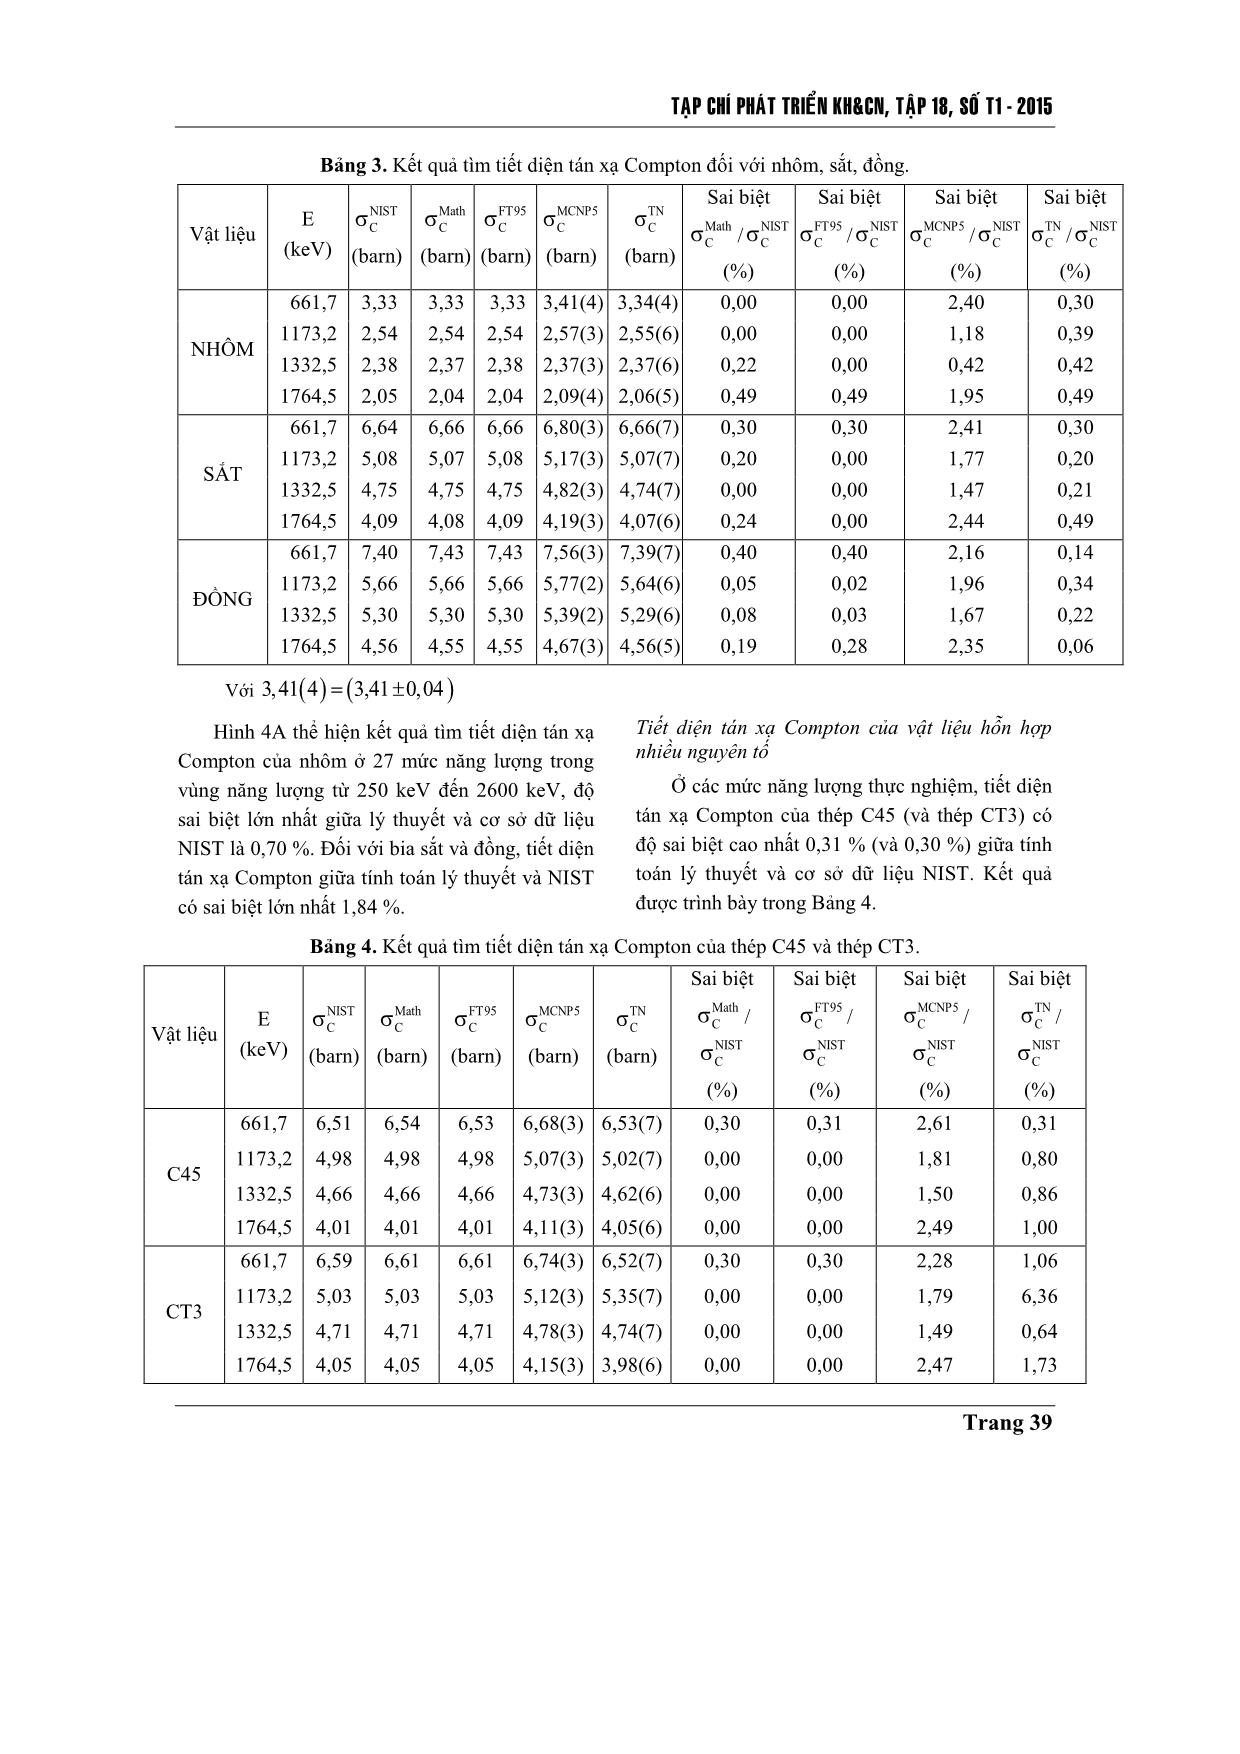 Tính toán tiết diện Compton của nhôm, sắt,đồng, thép C45 và thép CT3 trong vùng năng lượng 250 keV–2600 keV trang 6